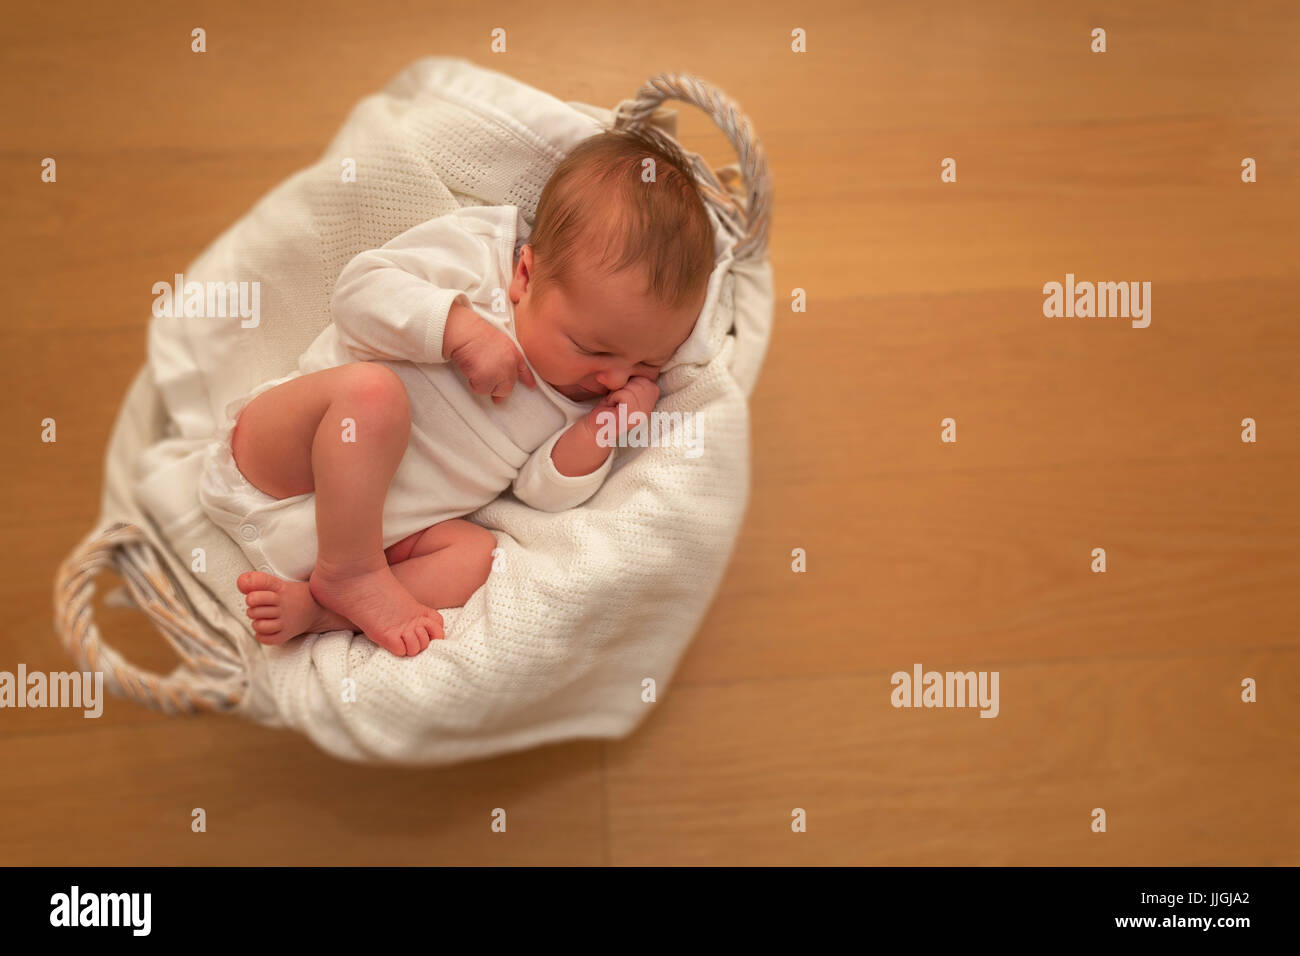 Bébé nouveau-né garçon endormi dans un panier Banque D'Images